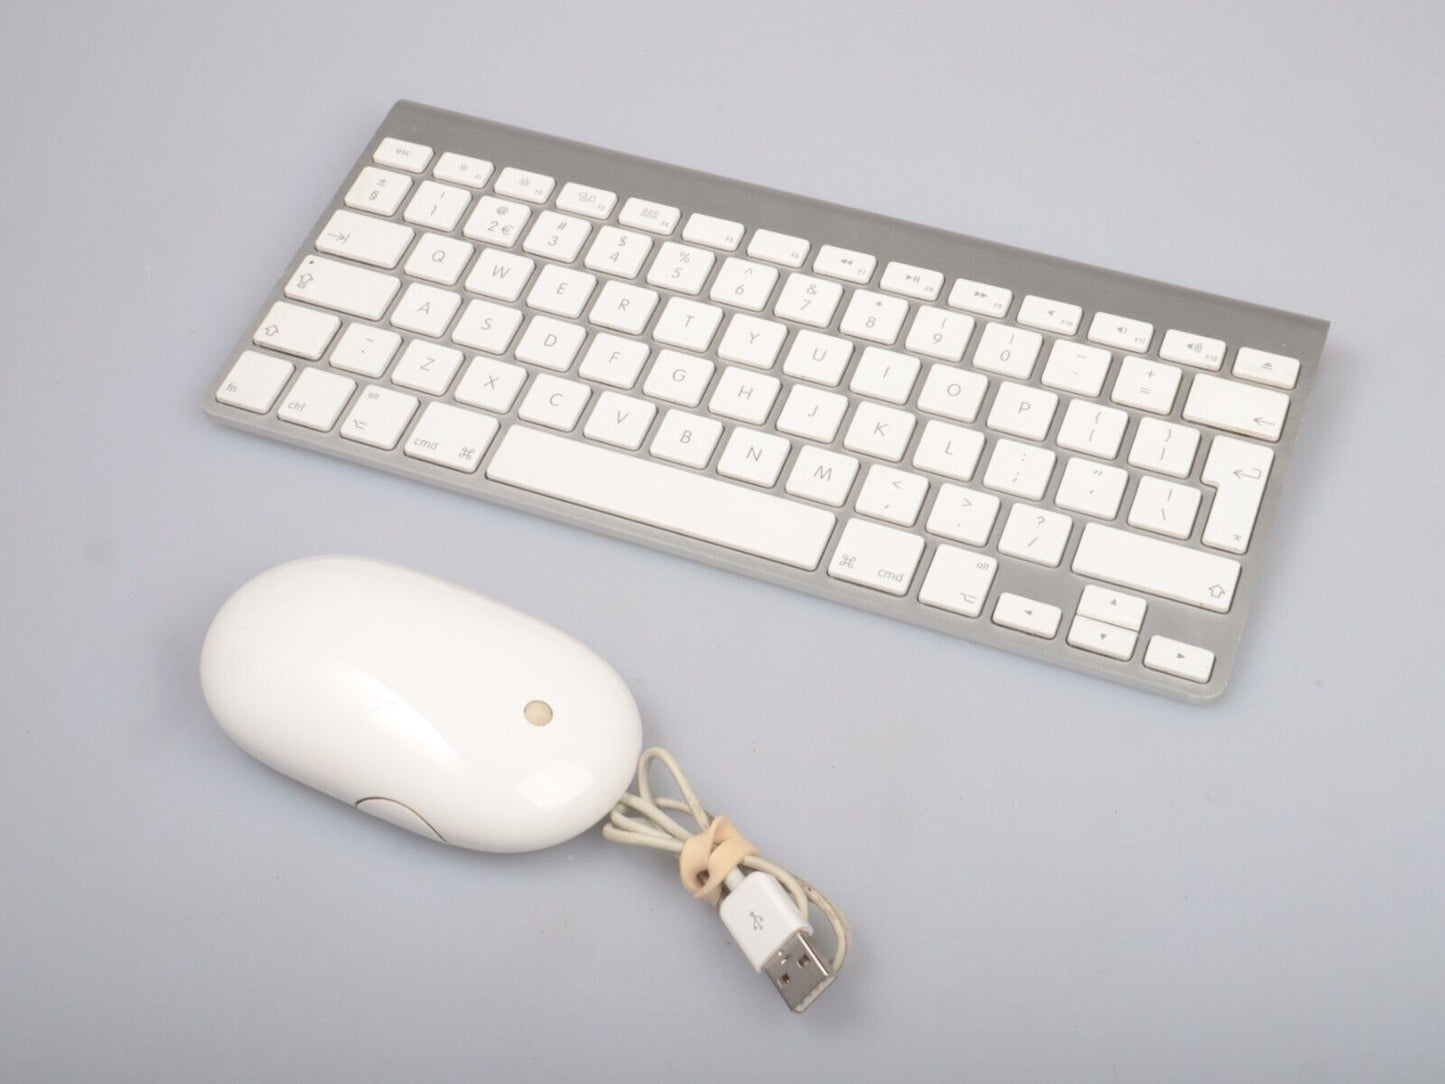 Origineel Apple draadloos toetsenbord (A1314) en muis (A1152) - Uitstekend 